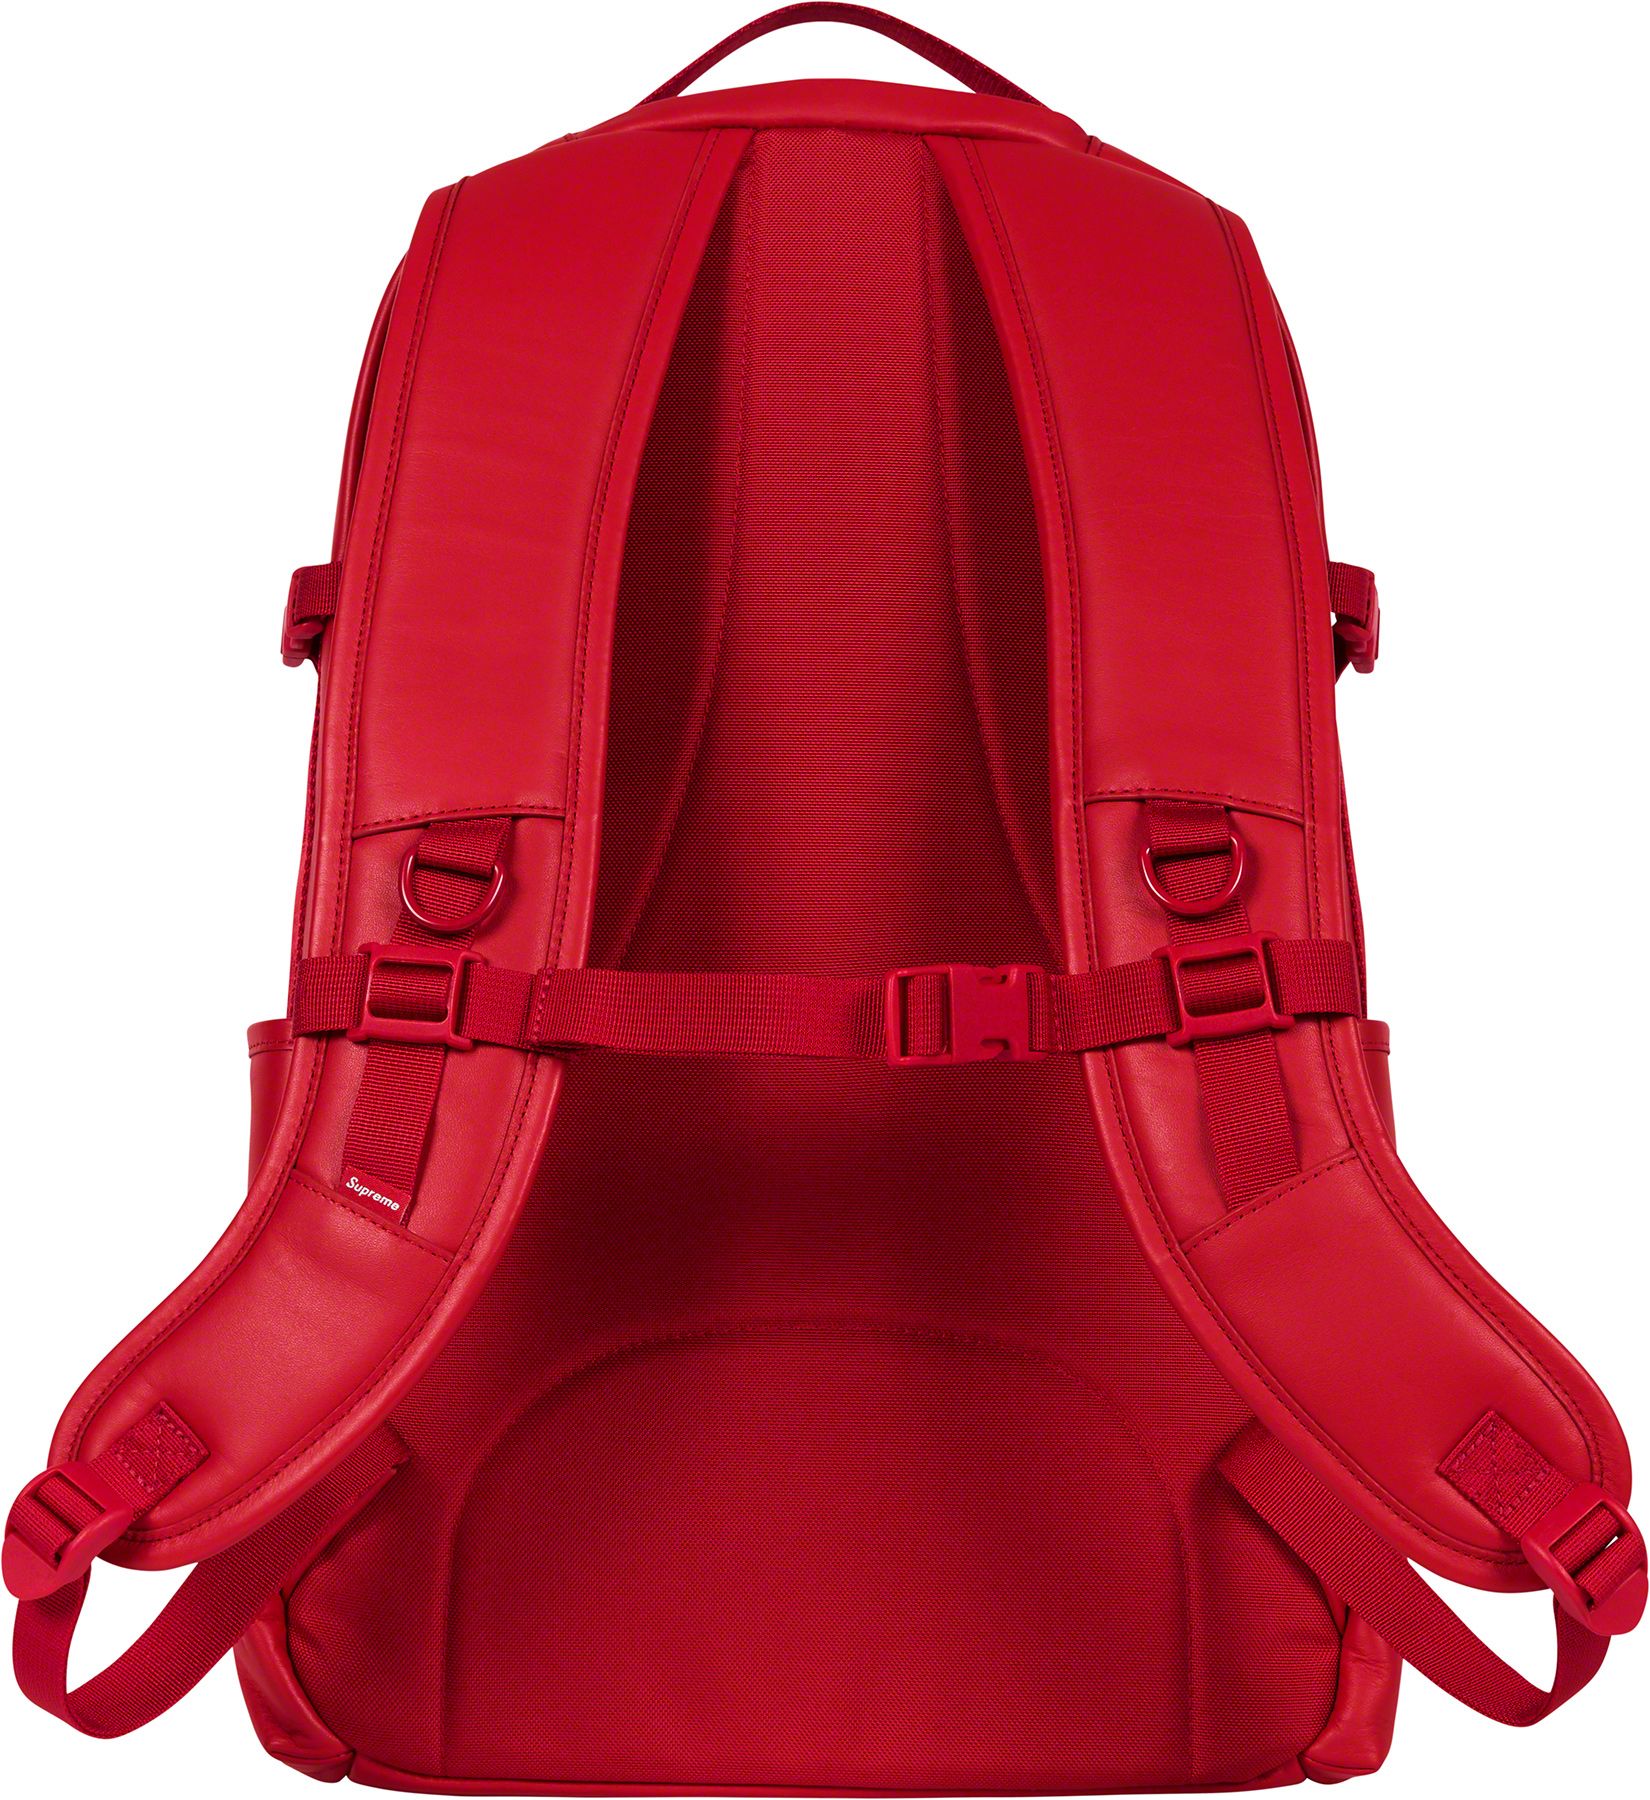 red supreme bag